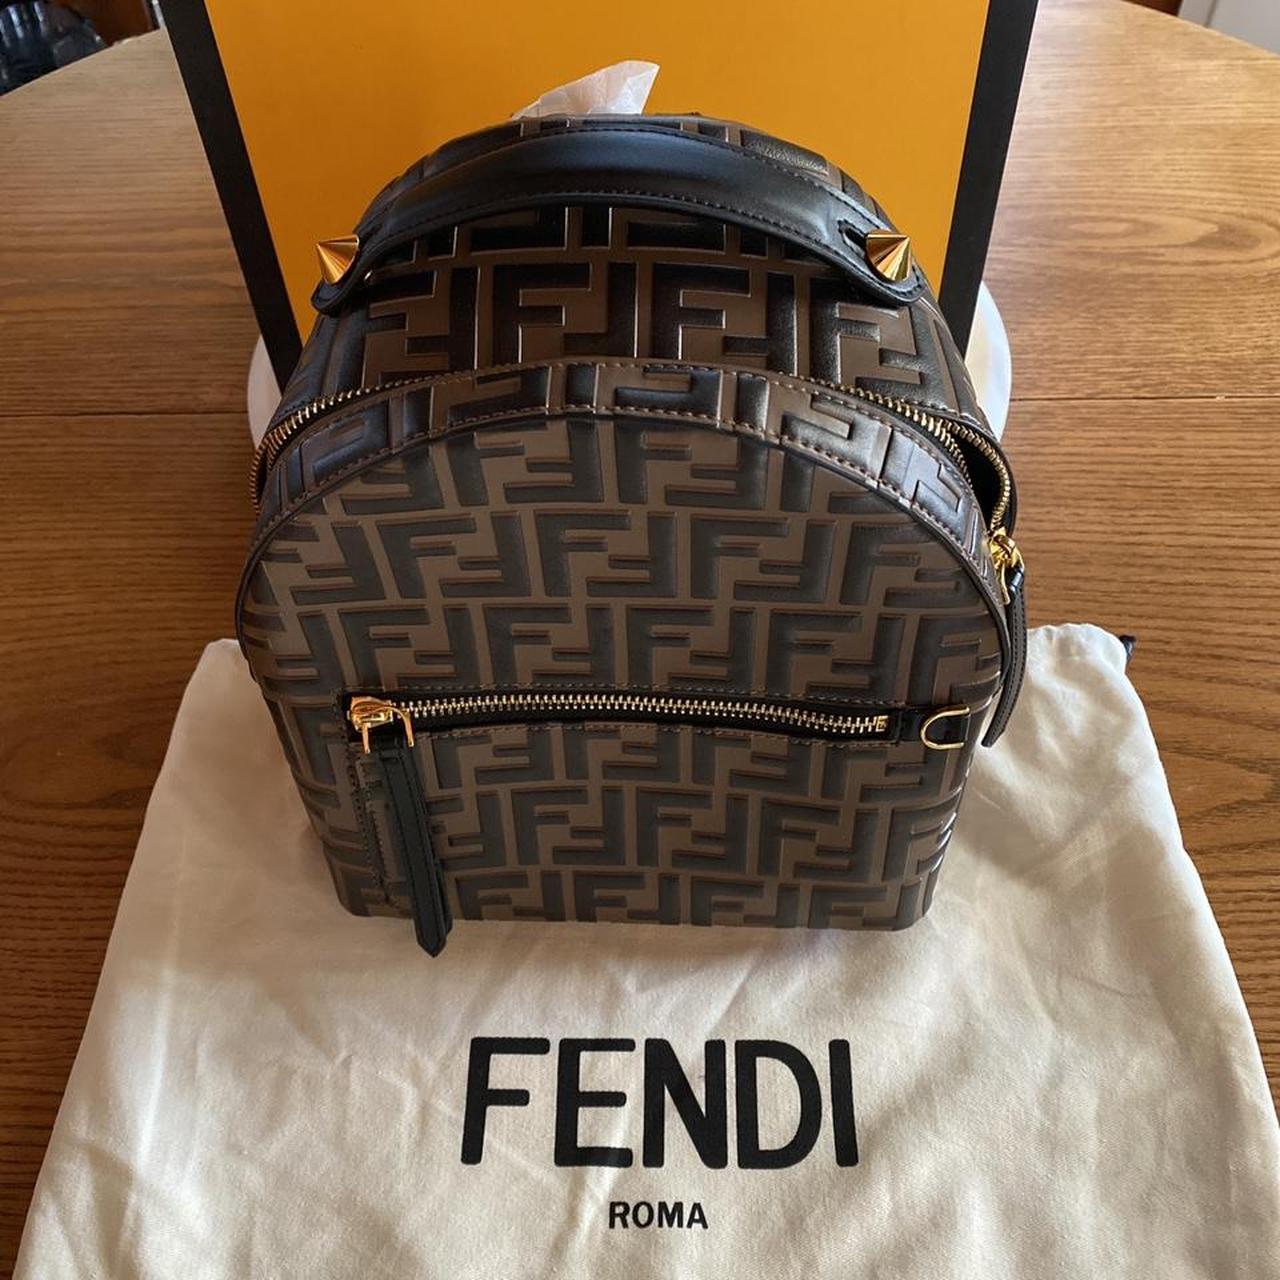 Fendi mini backpack New bag at great price - Depop